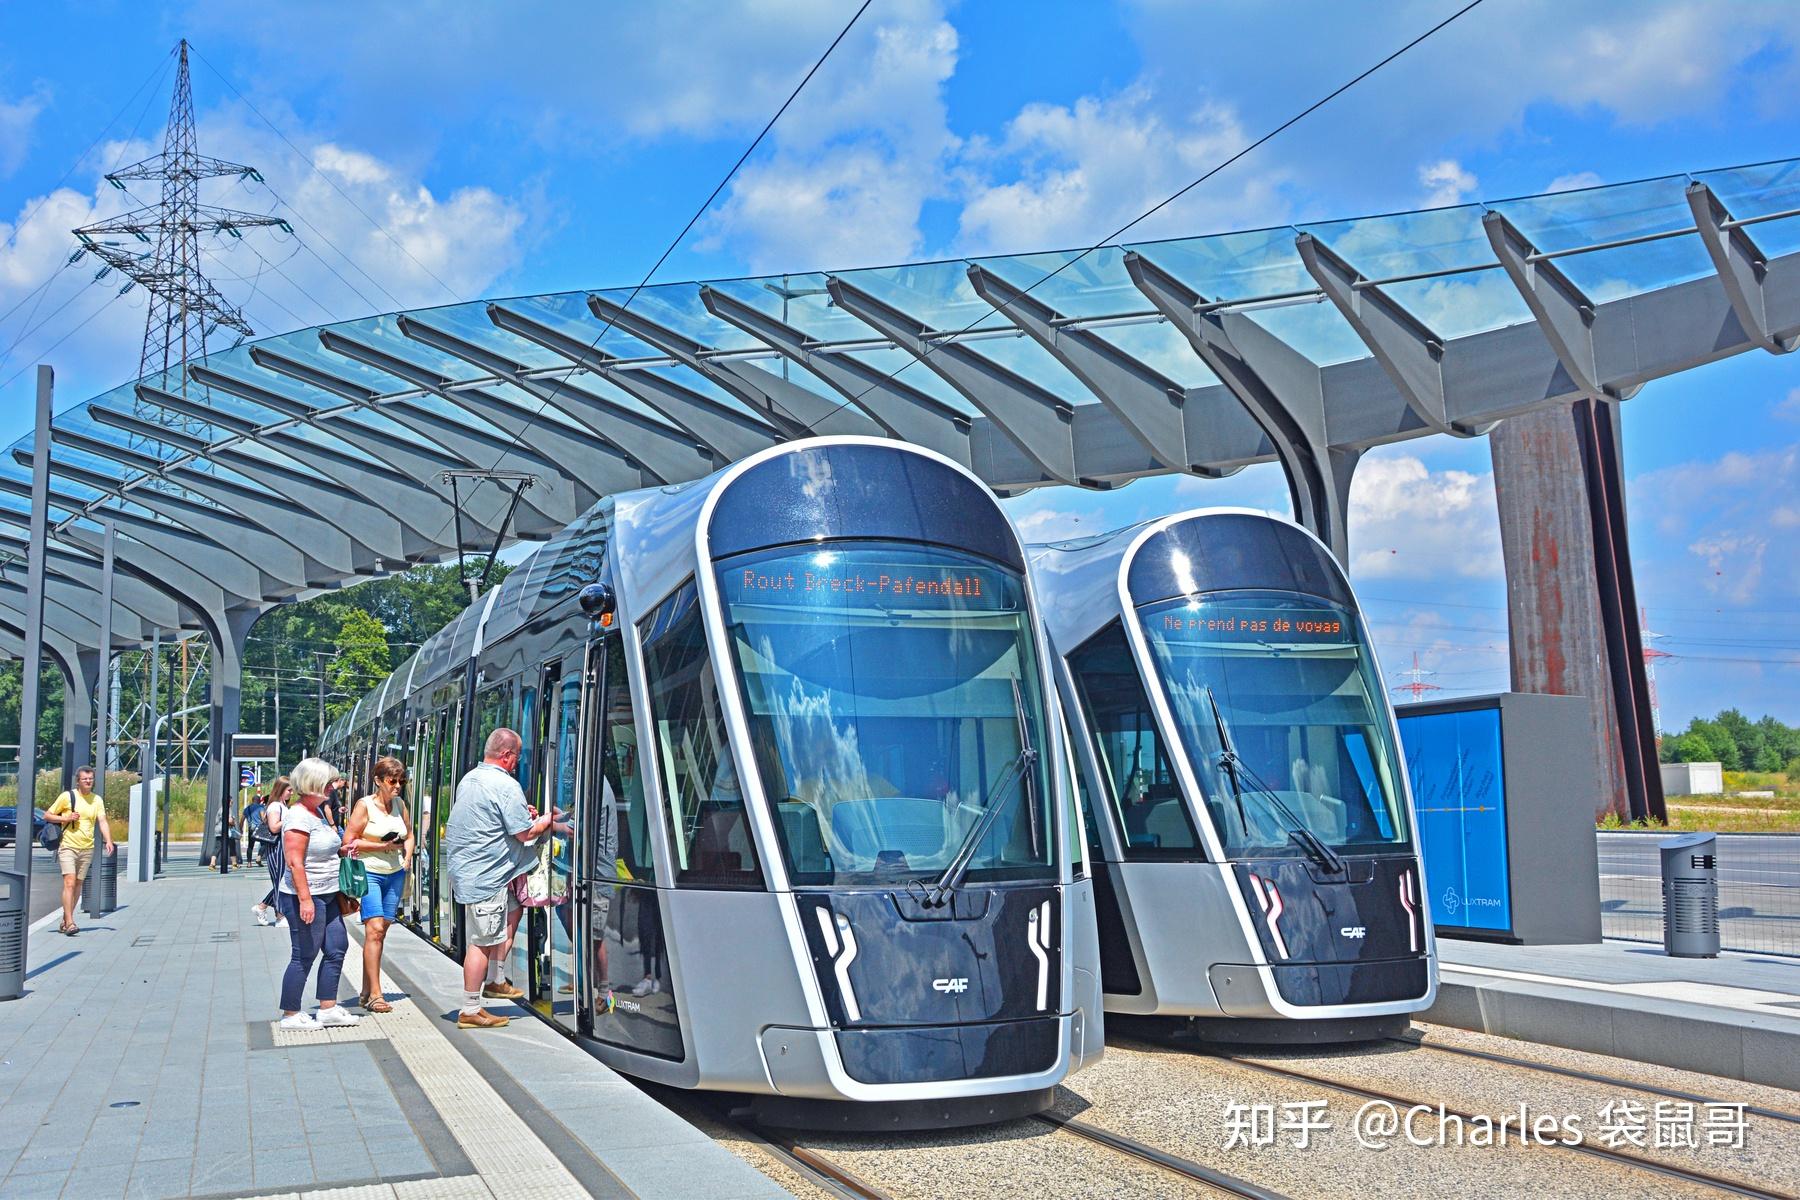 卢森堡也许是个小国,但它的交通基础设施却出奇的发达